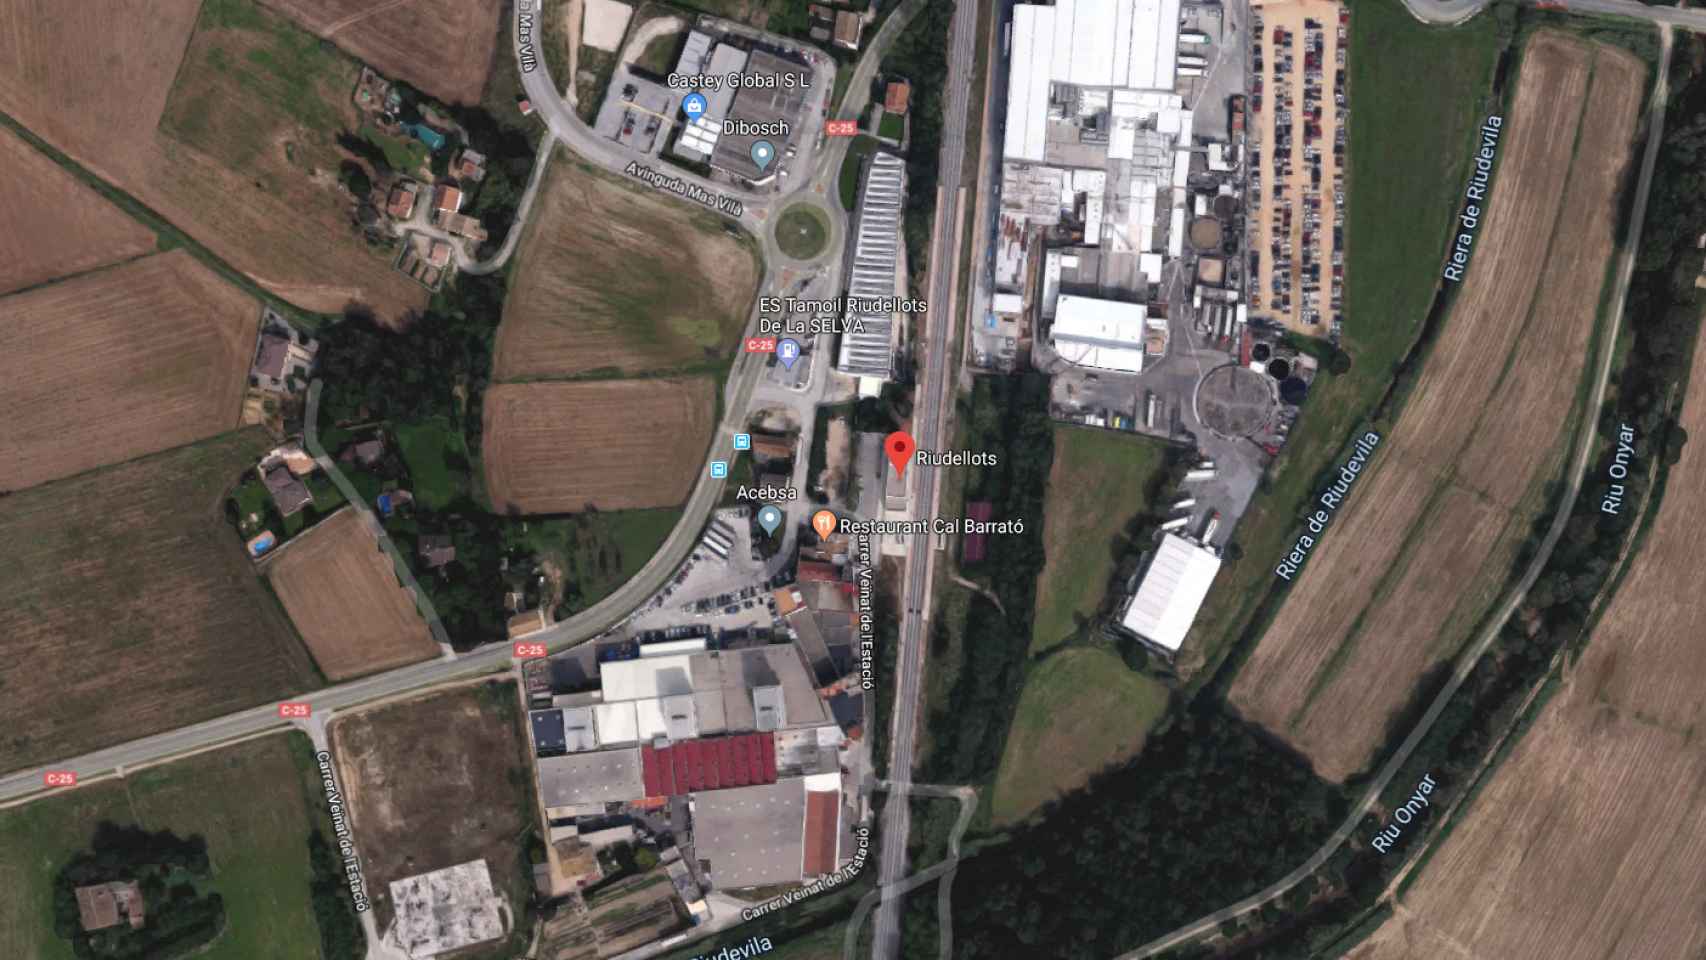 Estación de Riudellots, donde se encuentra el tren de mercancías que ha sufrido la fuga y ha obligado a cortar la R11 / GOOGLE MAPS